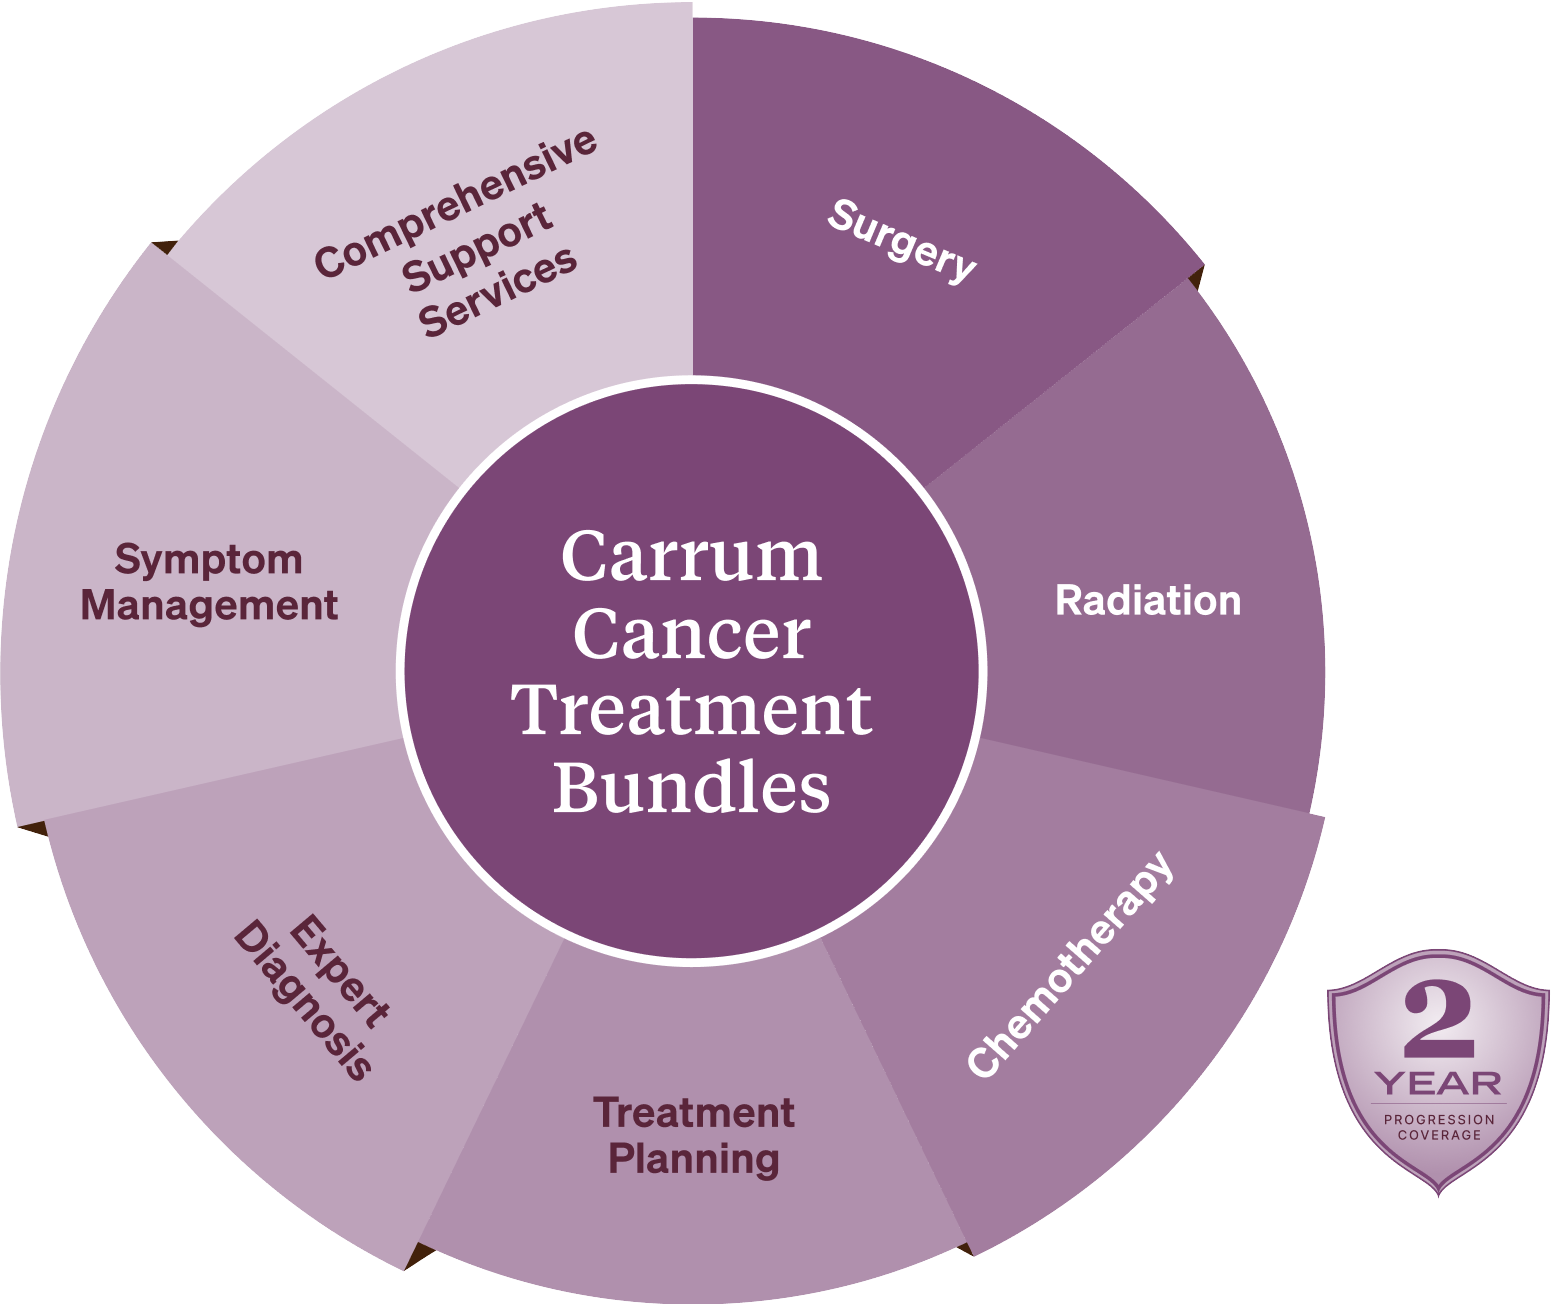 Carrum Cancer Treatment Bundle